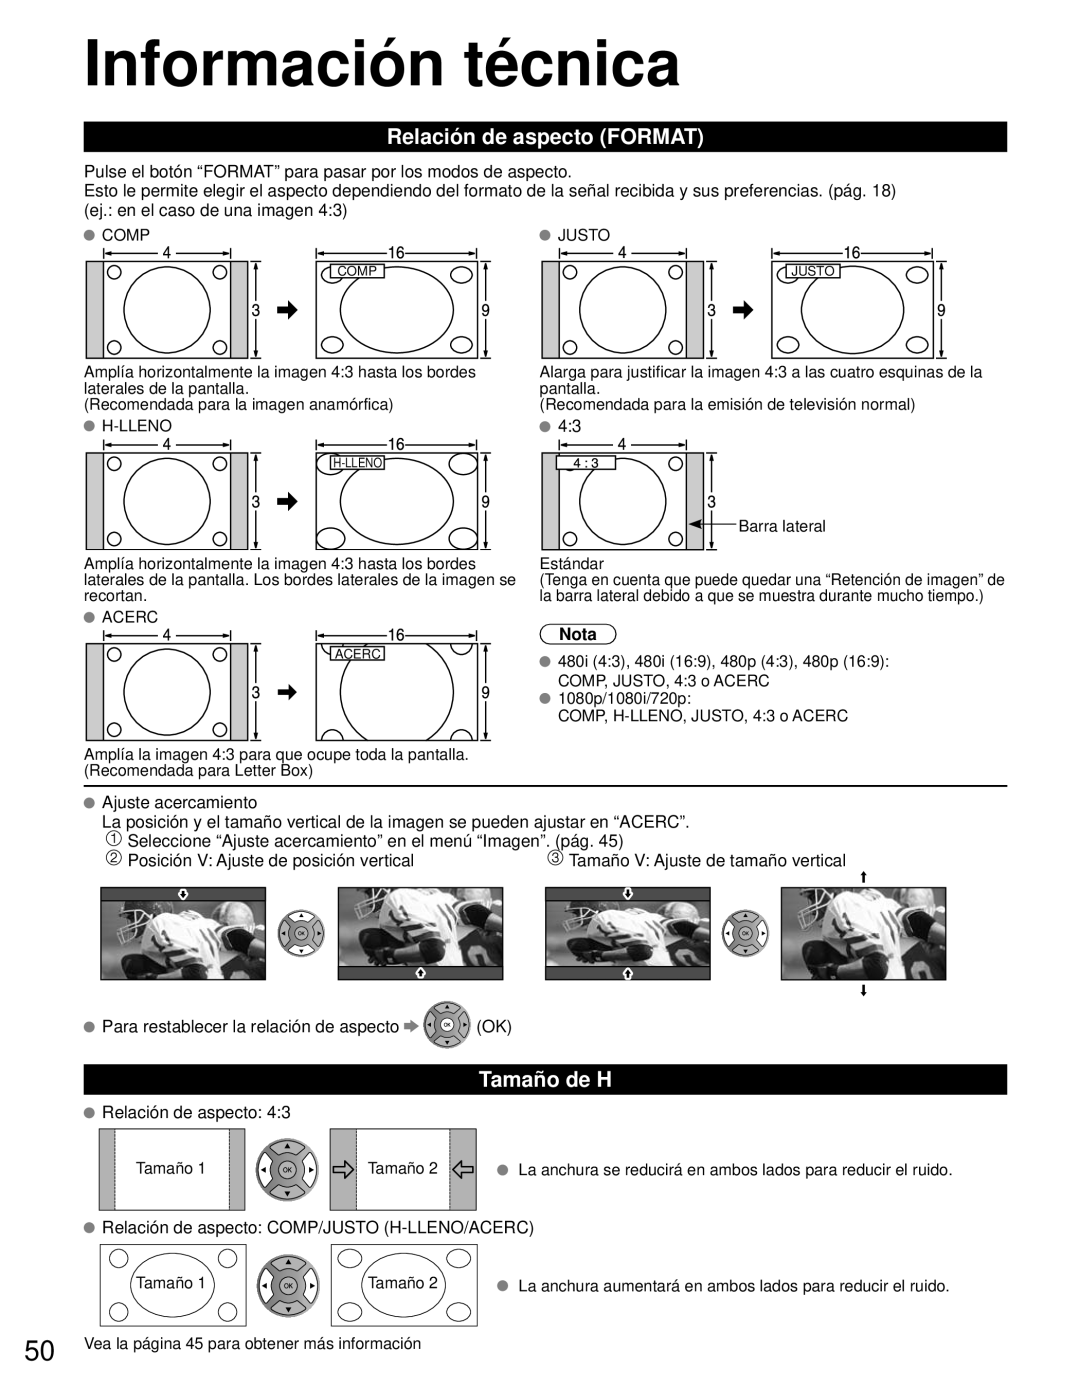 Panasonic TC-L42E3 owner manual Información técnica, Relación de aspecto FORMAT, Tamaño de H, Nota 